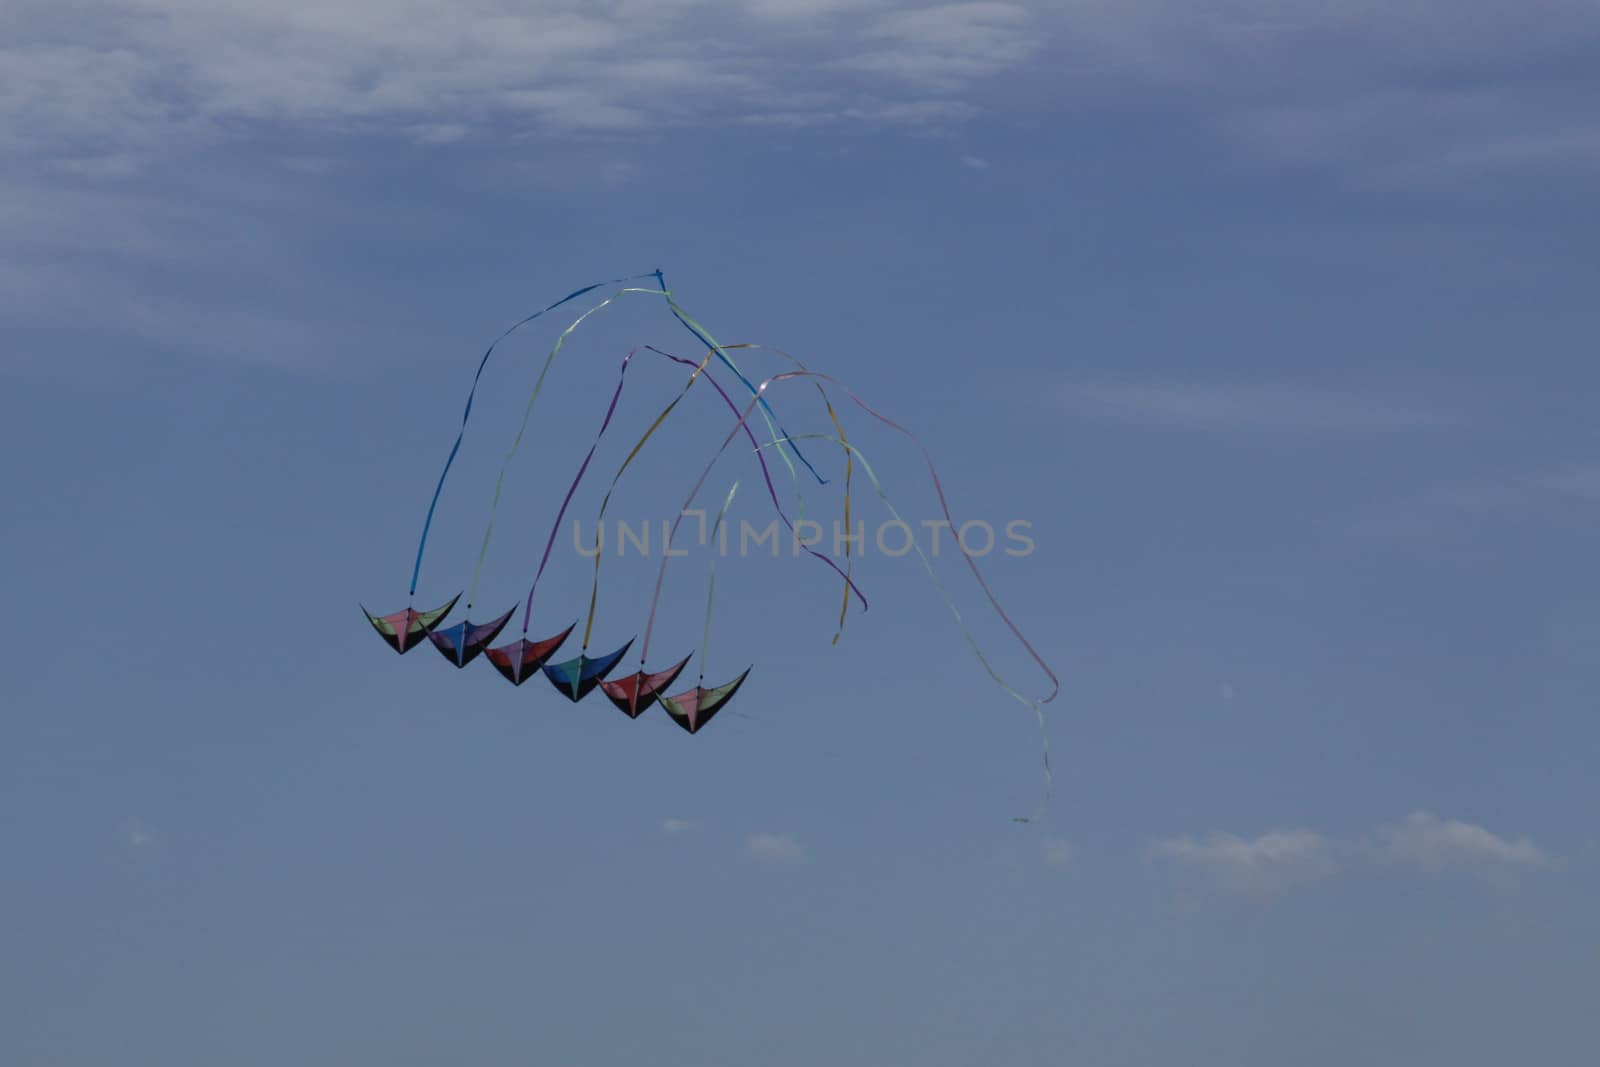 Kites against a blue sky.